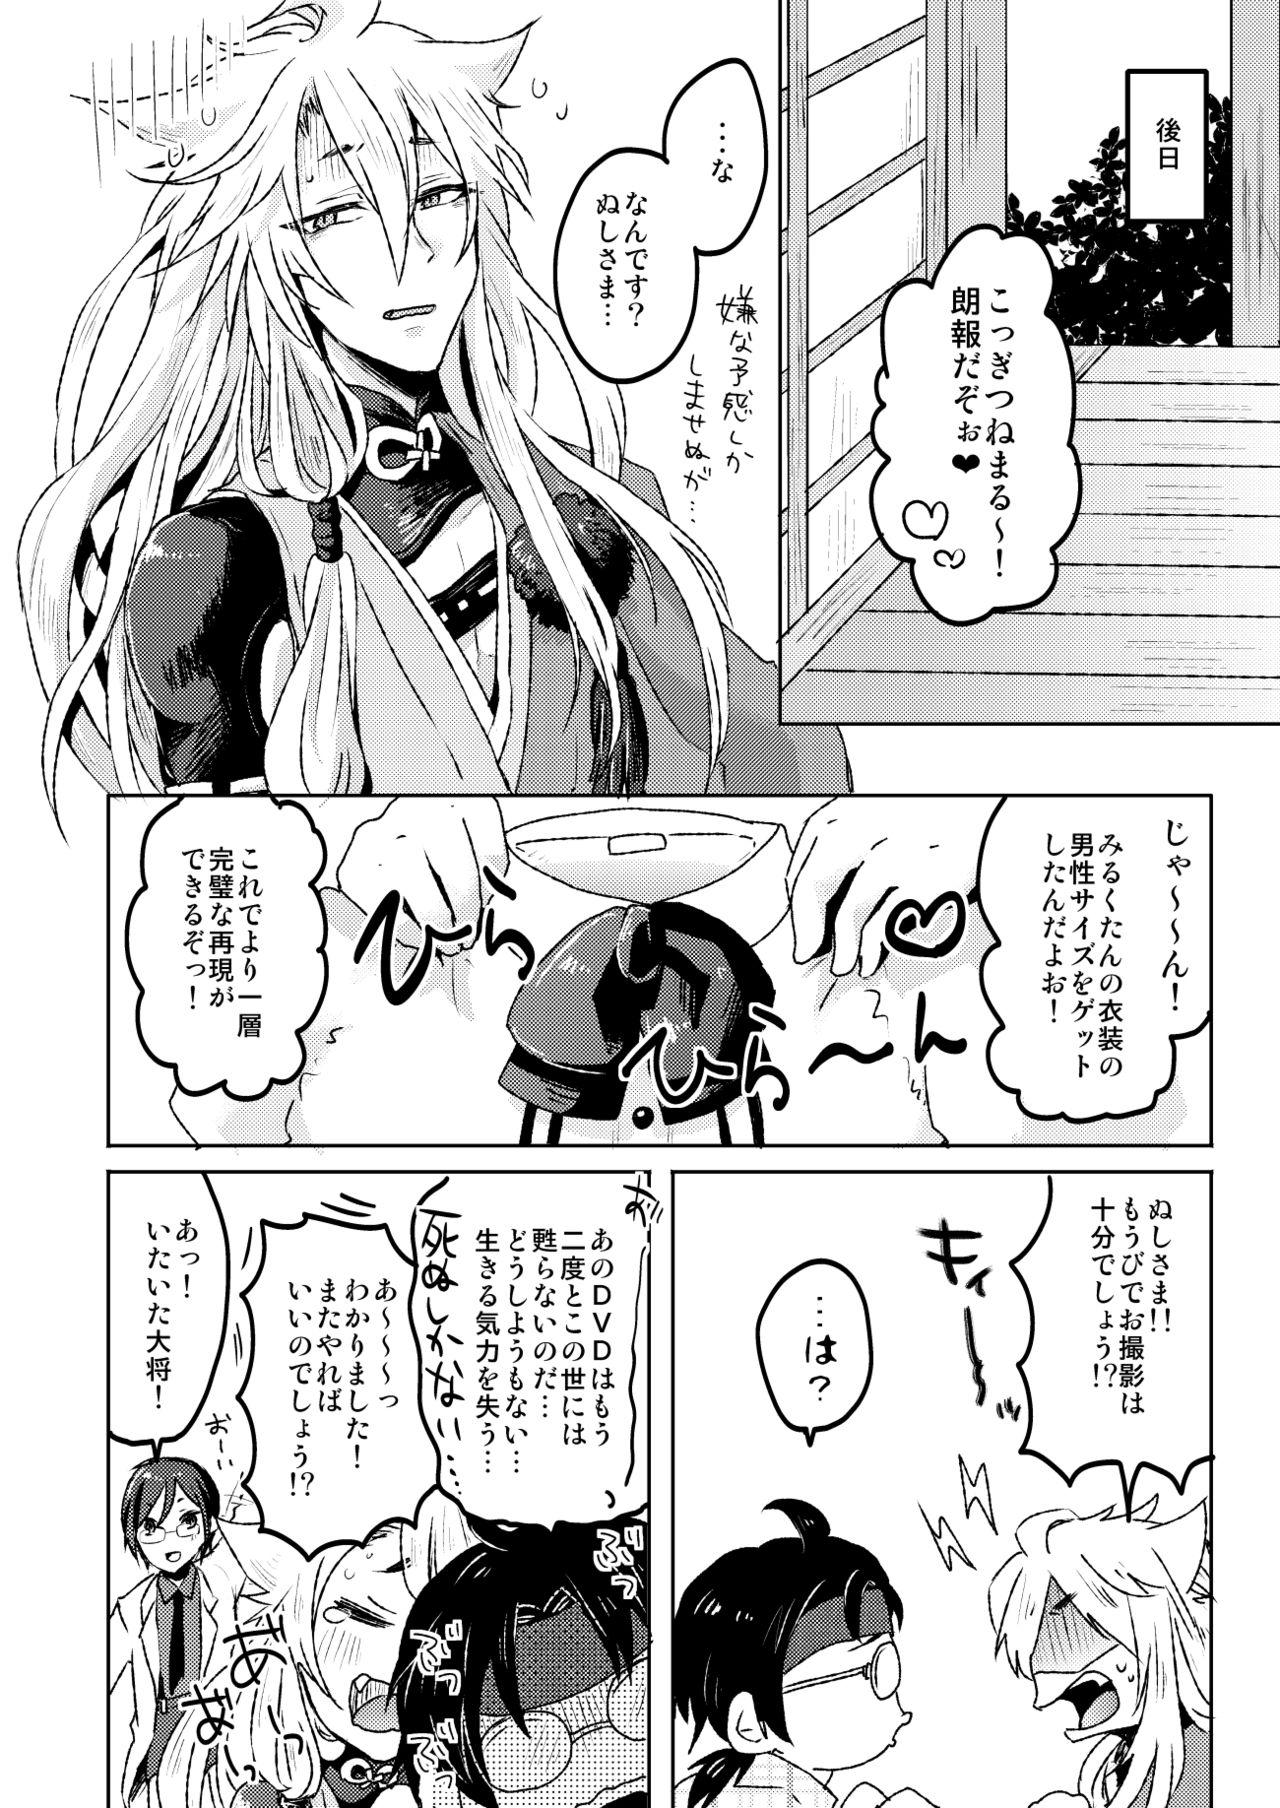 Pelada 愛狐遊戯 - Touken ranbu Toys - Page 24